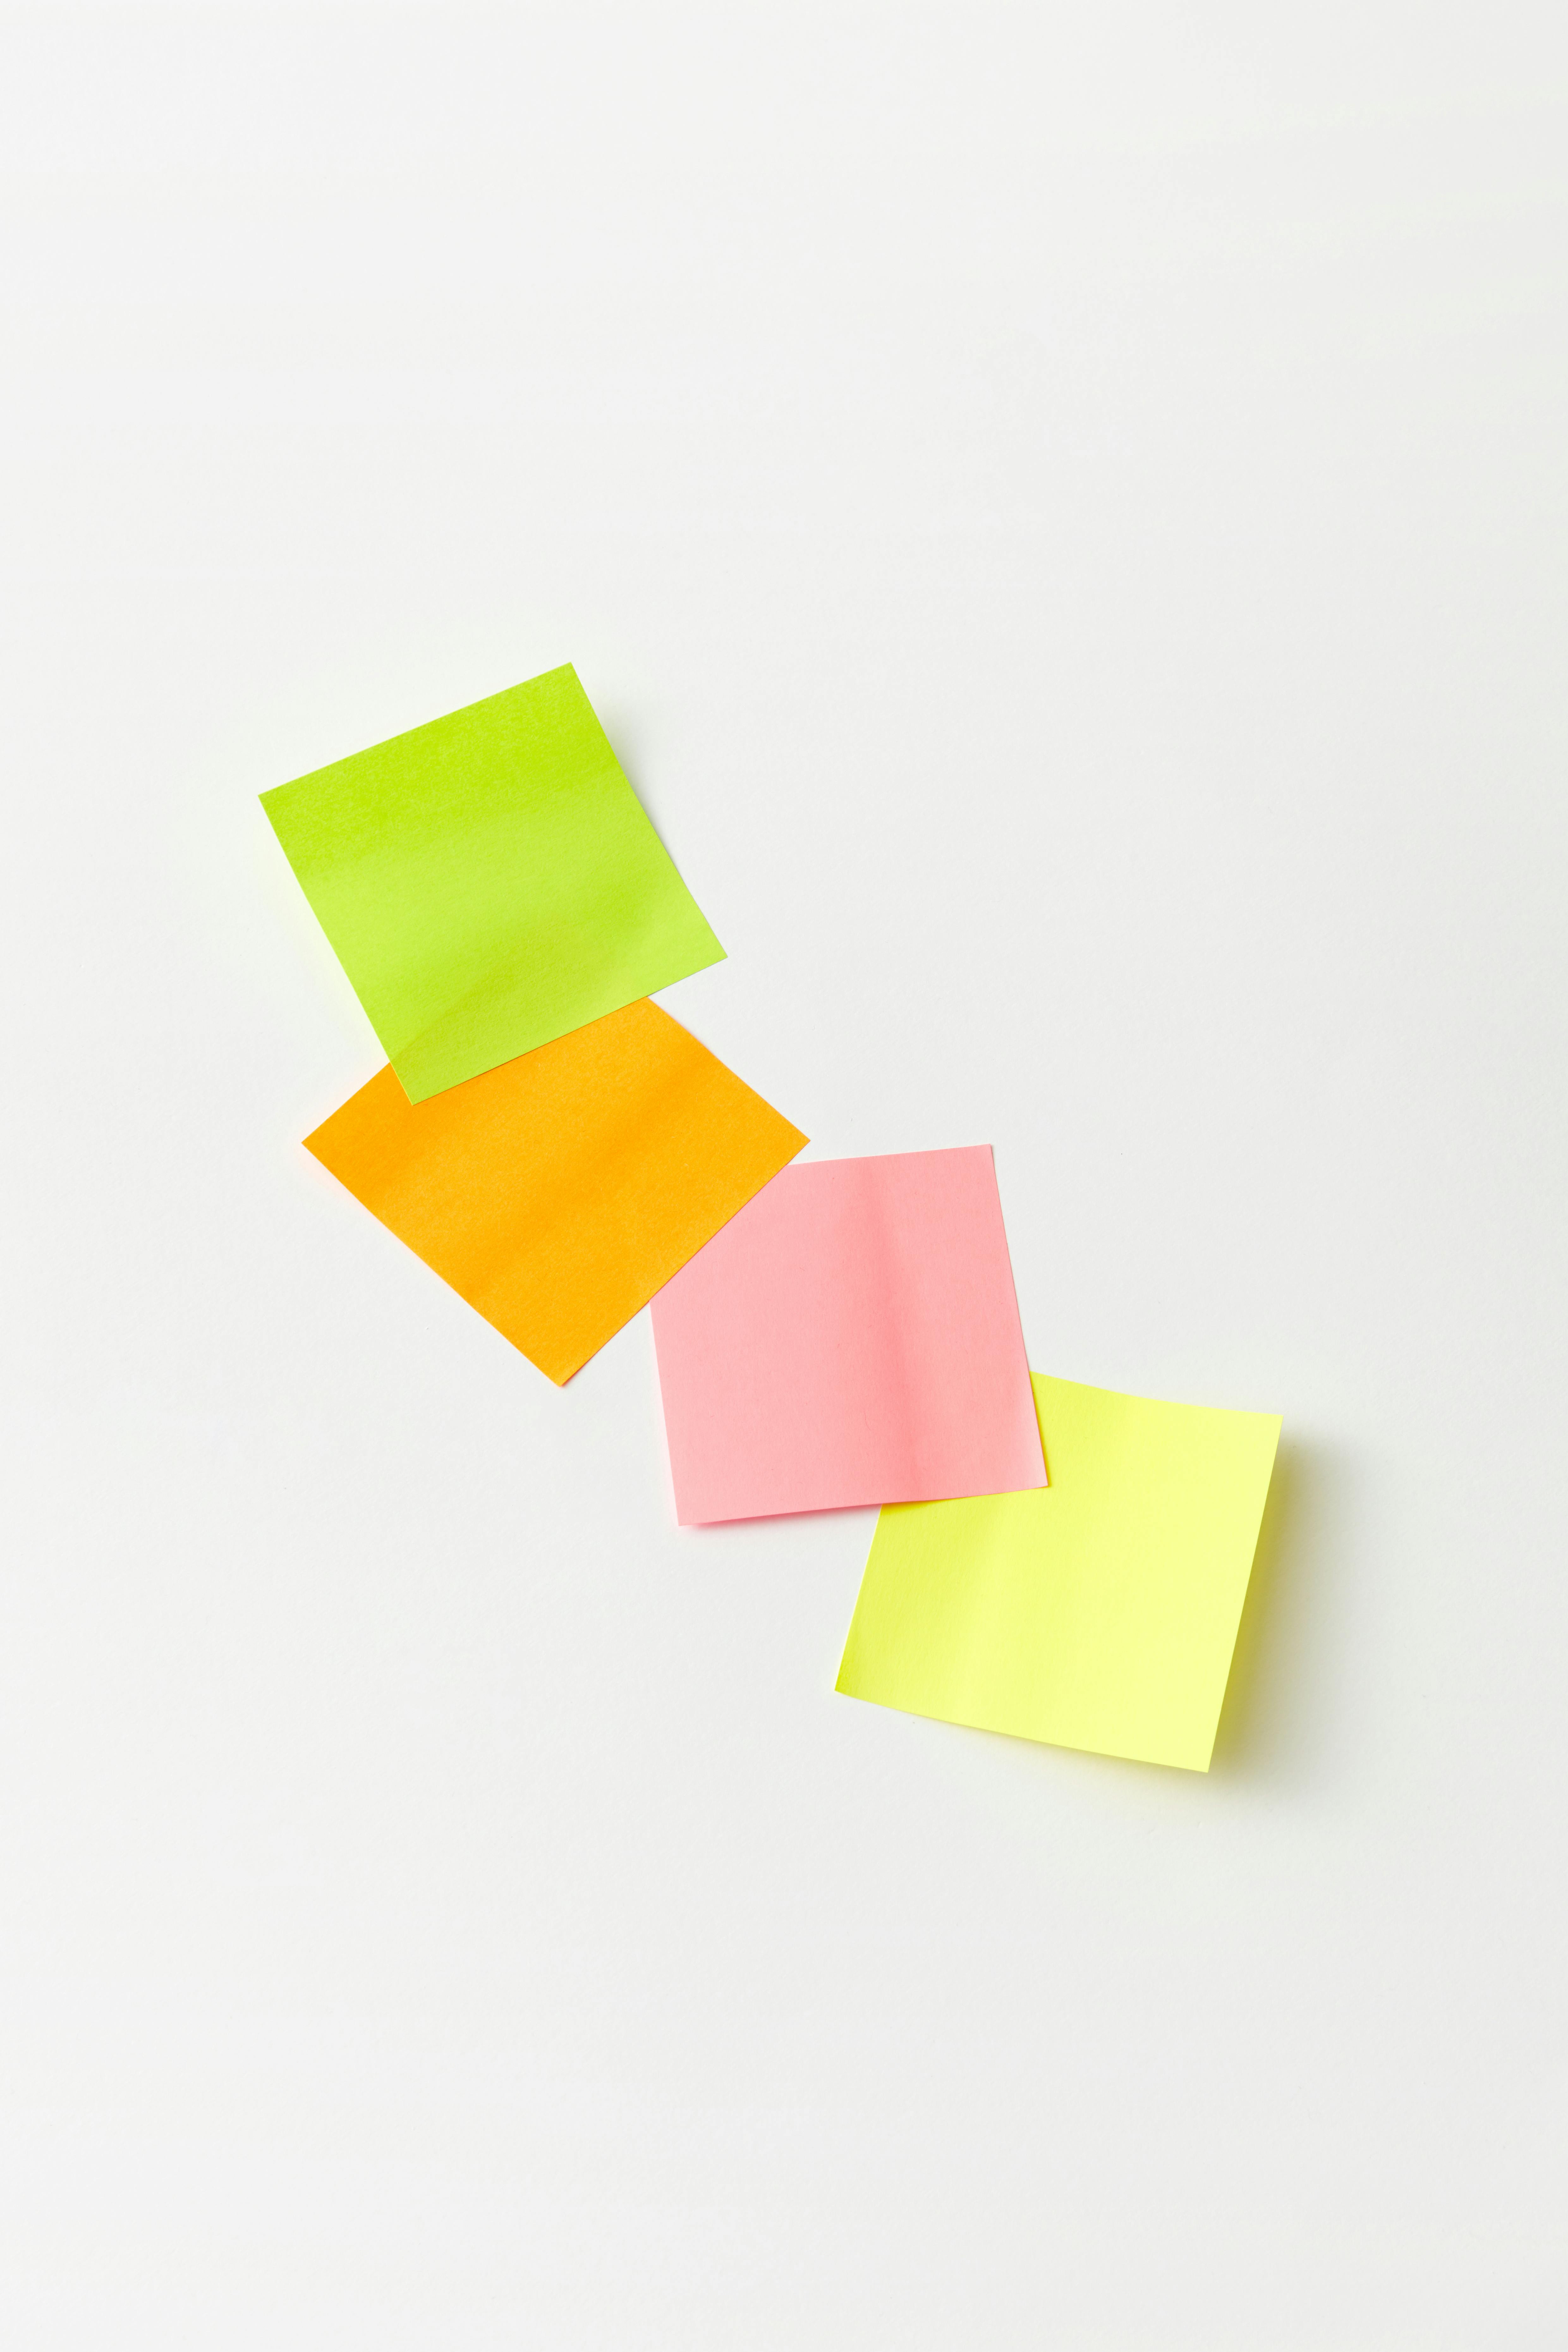 Six white sticky notes photo – Free Business Image on Unsplash